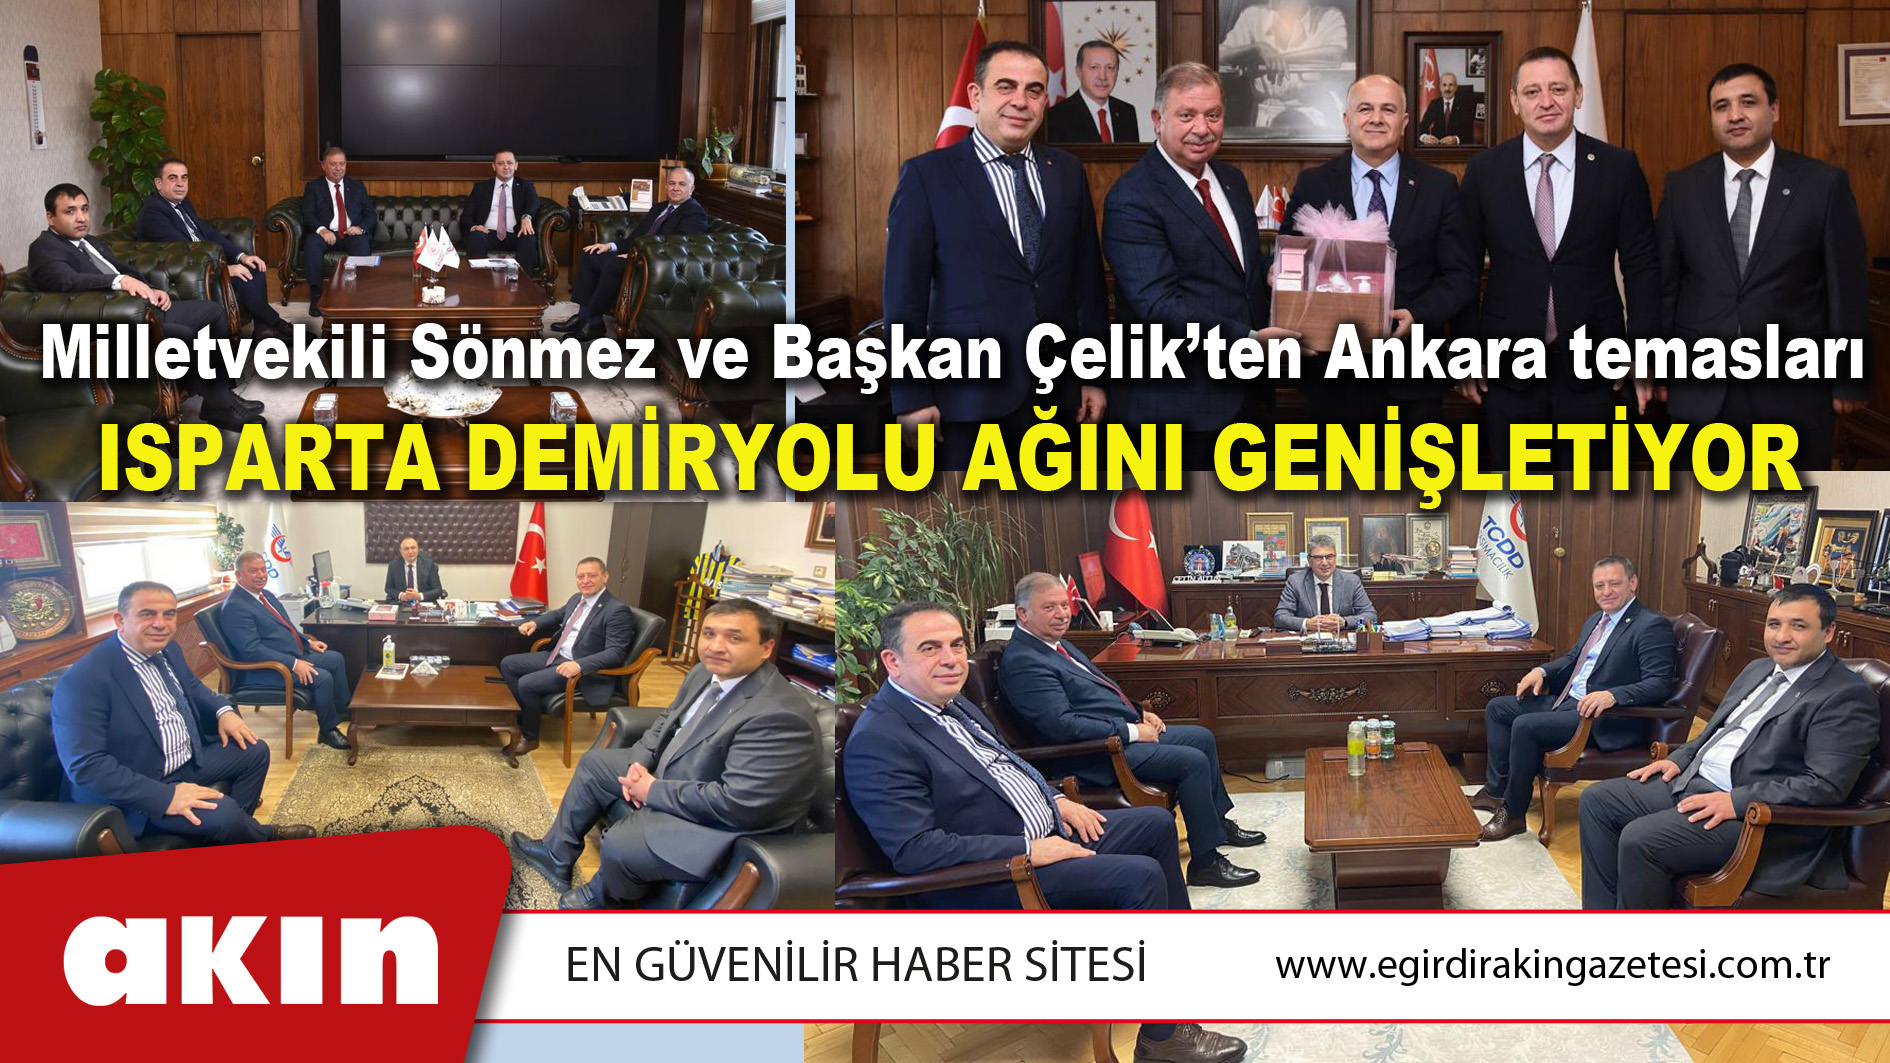 Milletvekili Sönmez ve Başkan Çelik’ten Ankara temasları